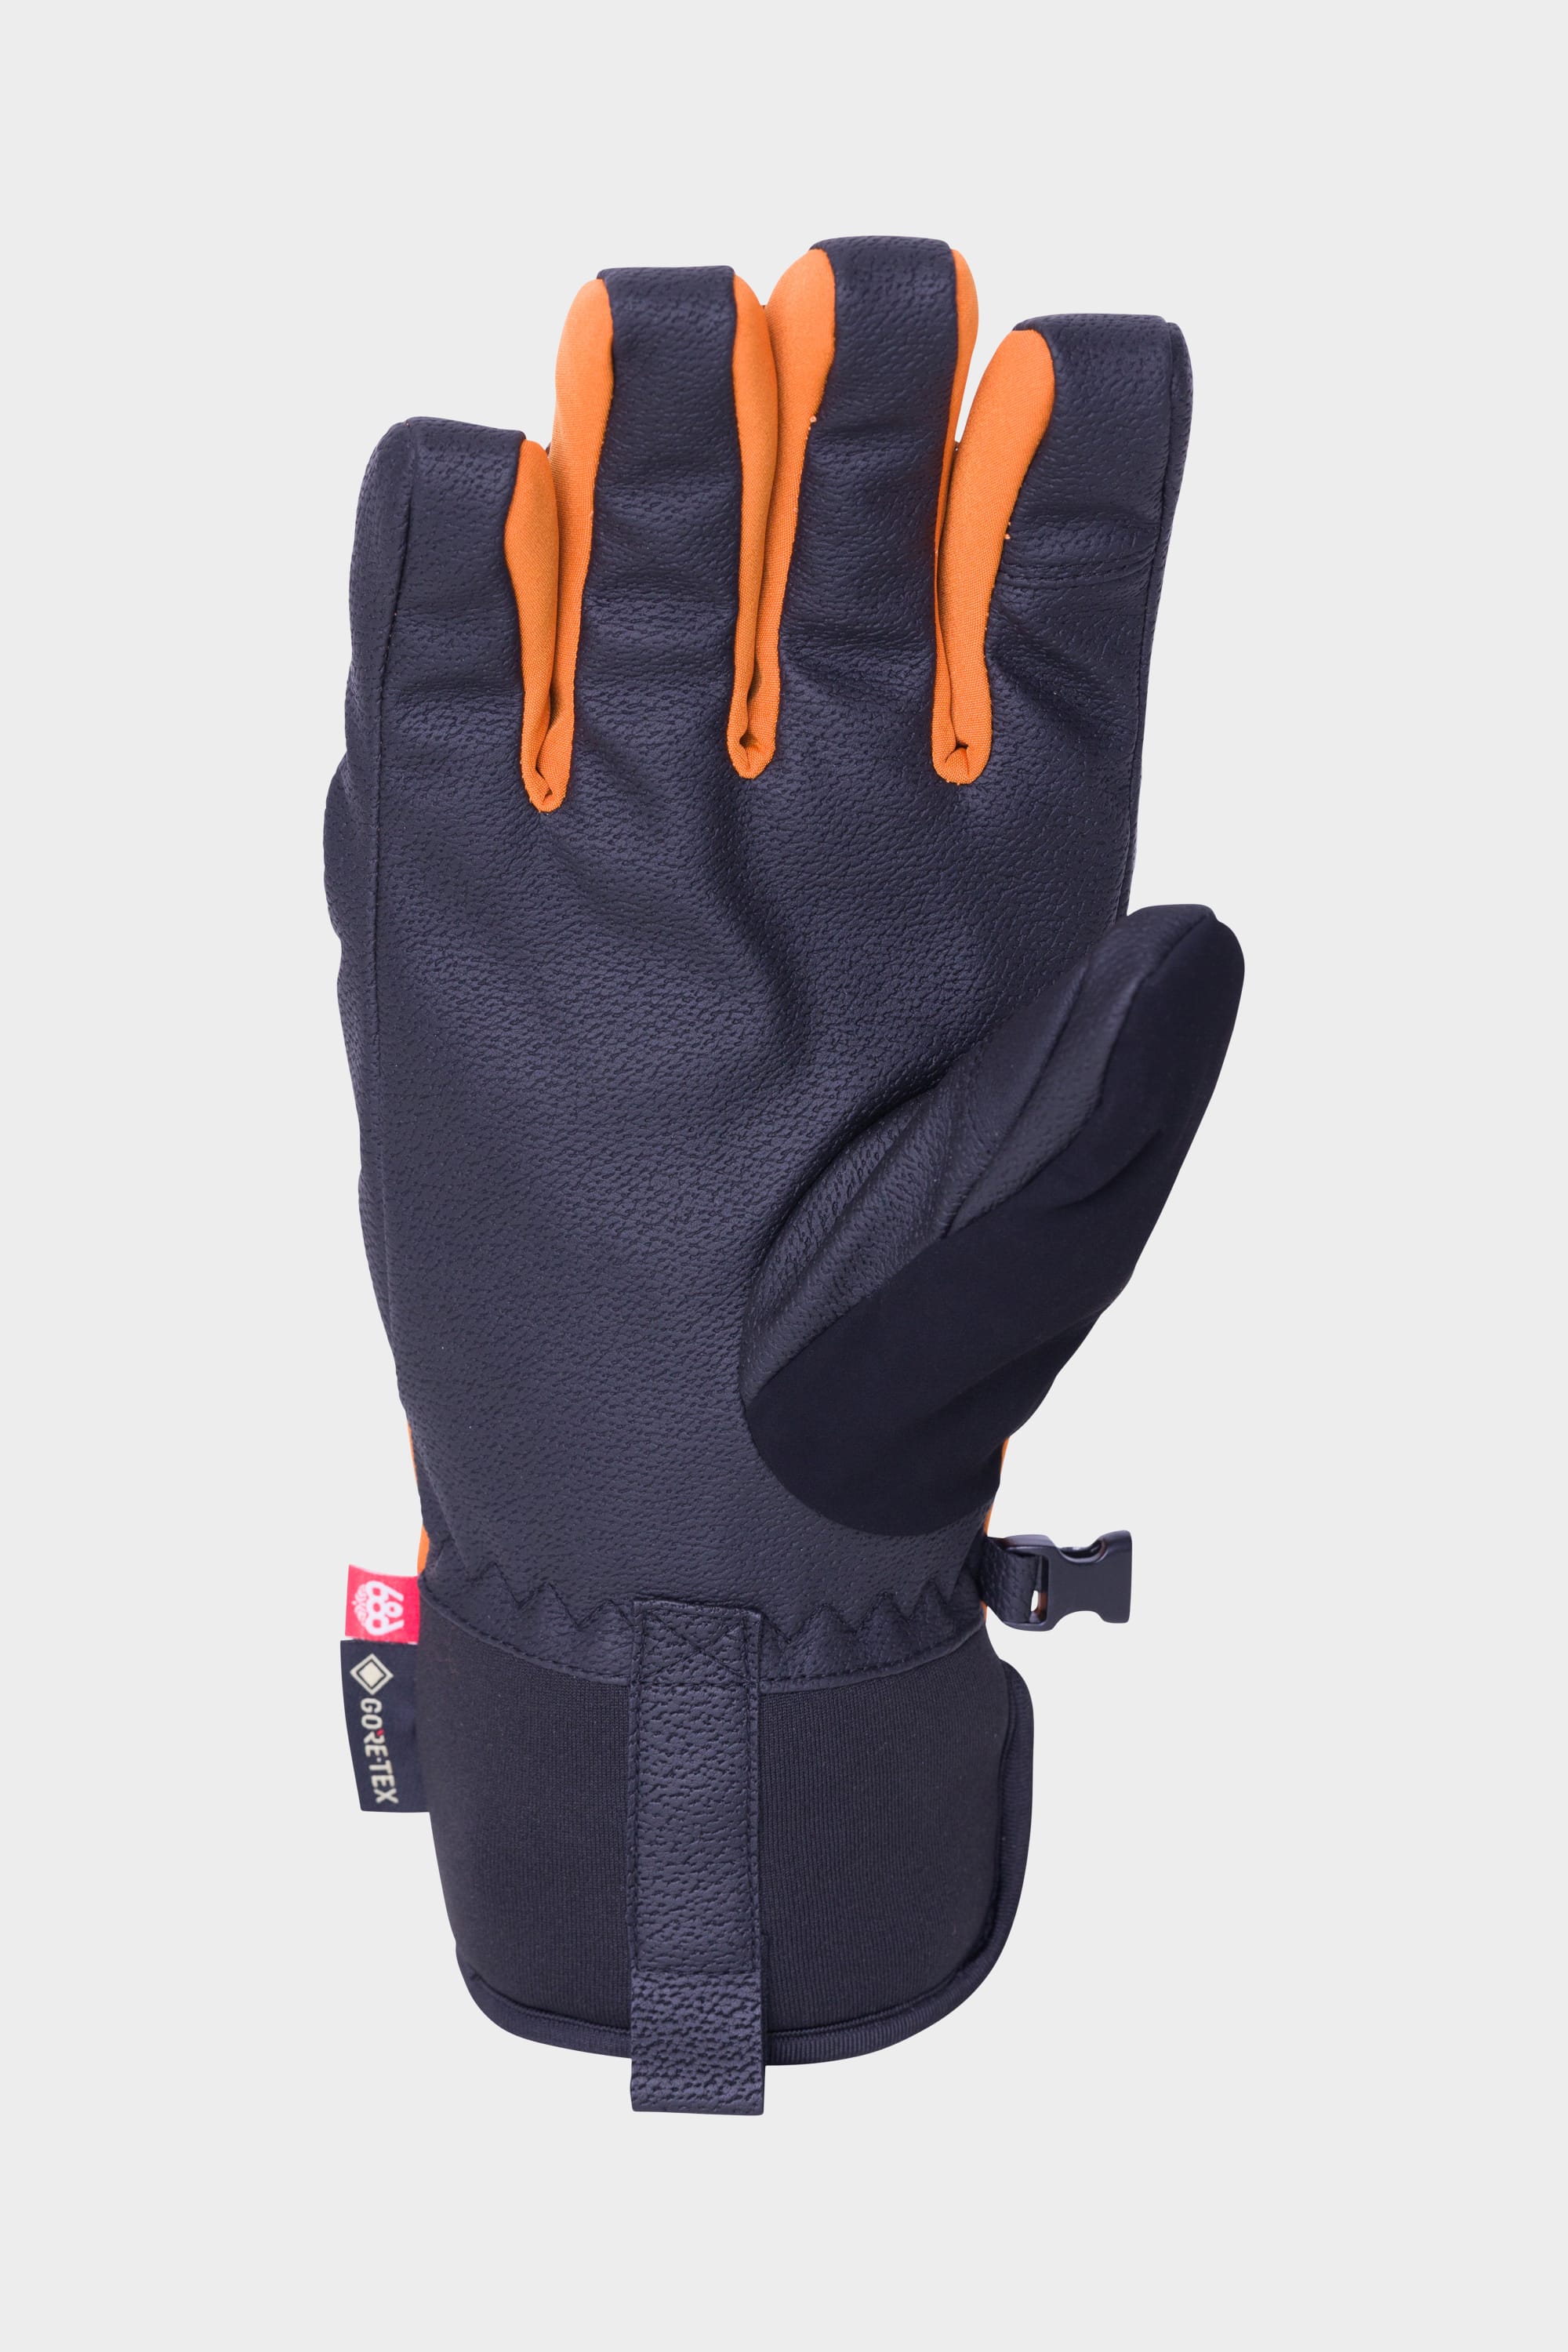 686 Men's GORE-TEX Linear Under Cuff Glove Copper Orange / L